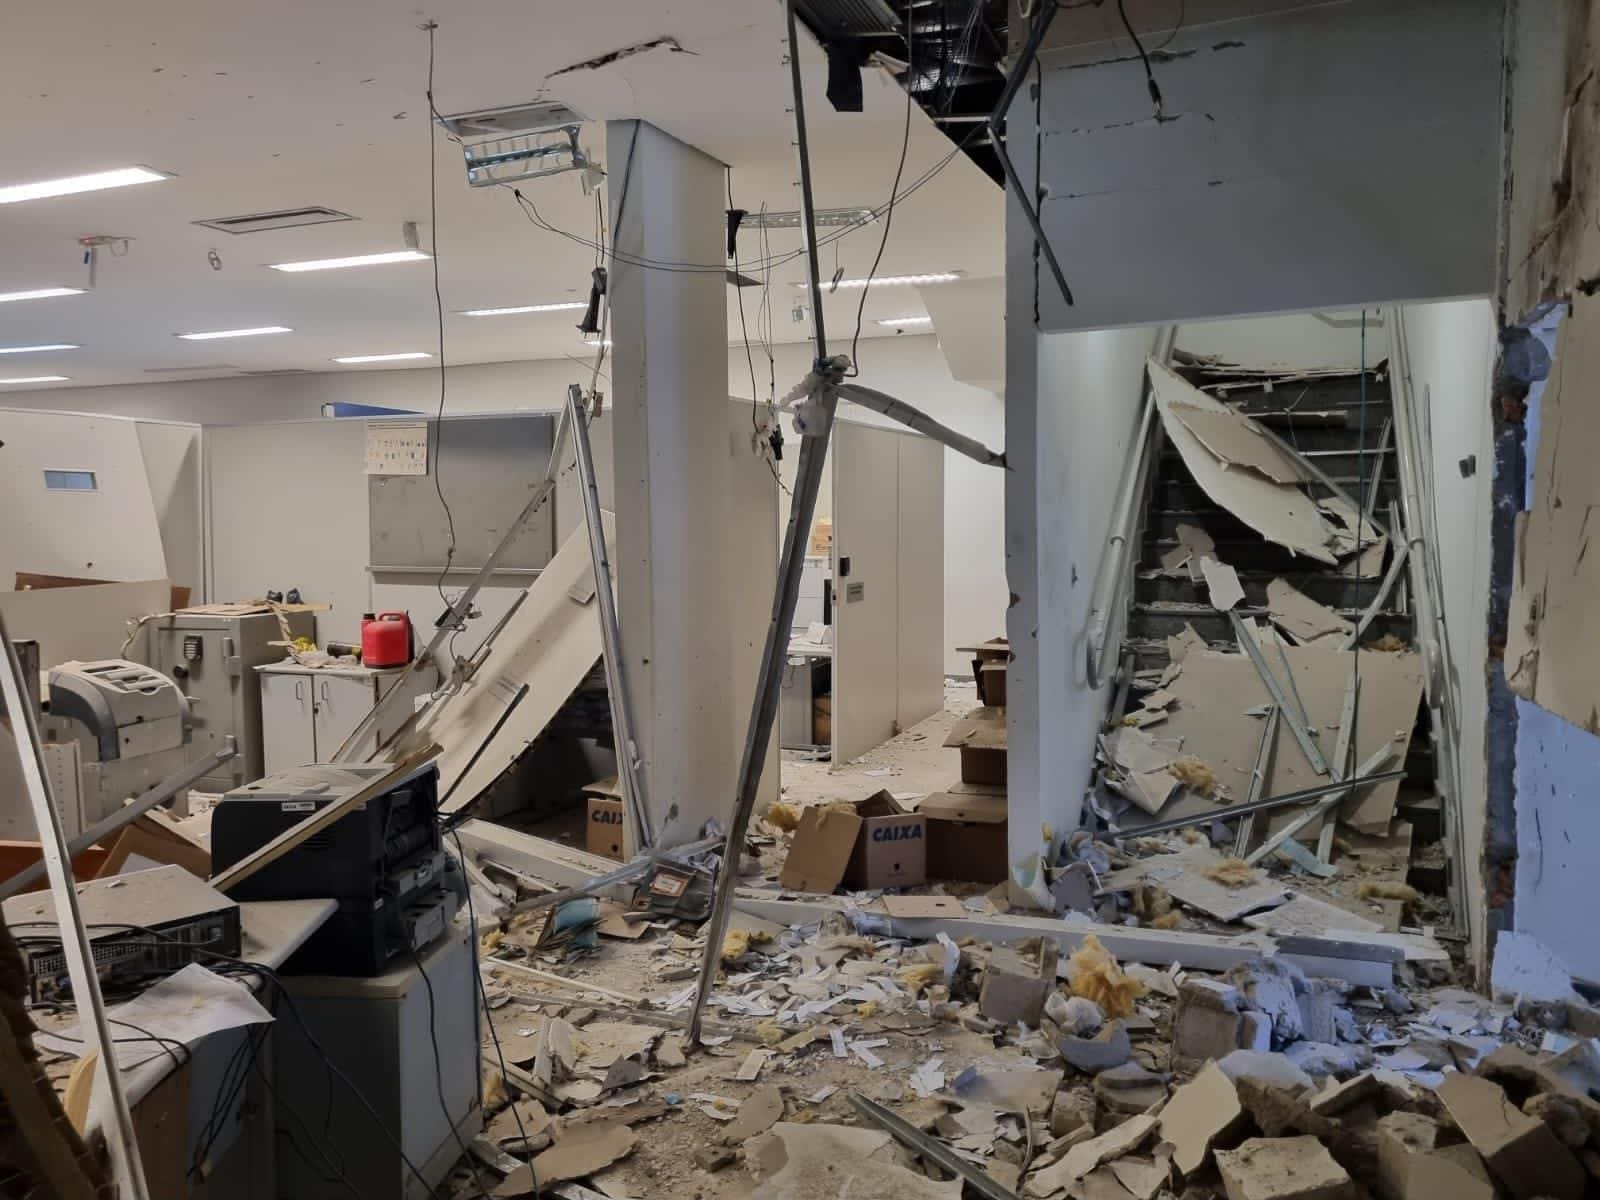 Agência da Caixa ficou destruída após assalto em Itajubá